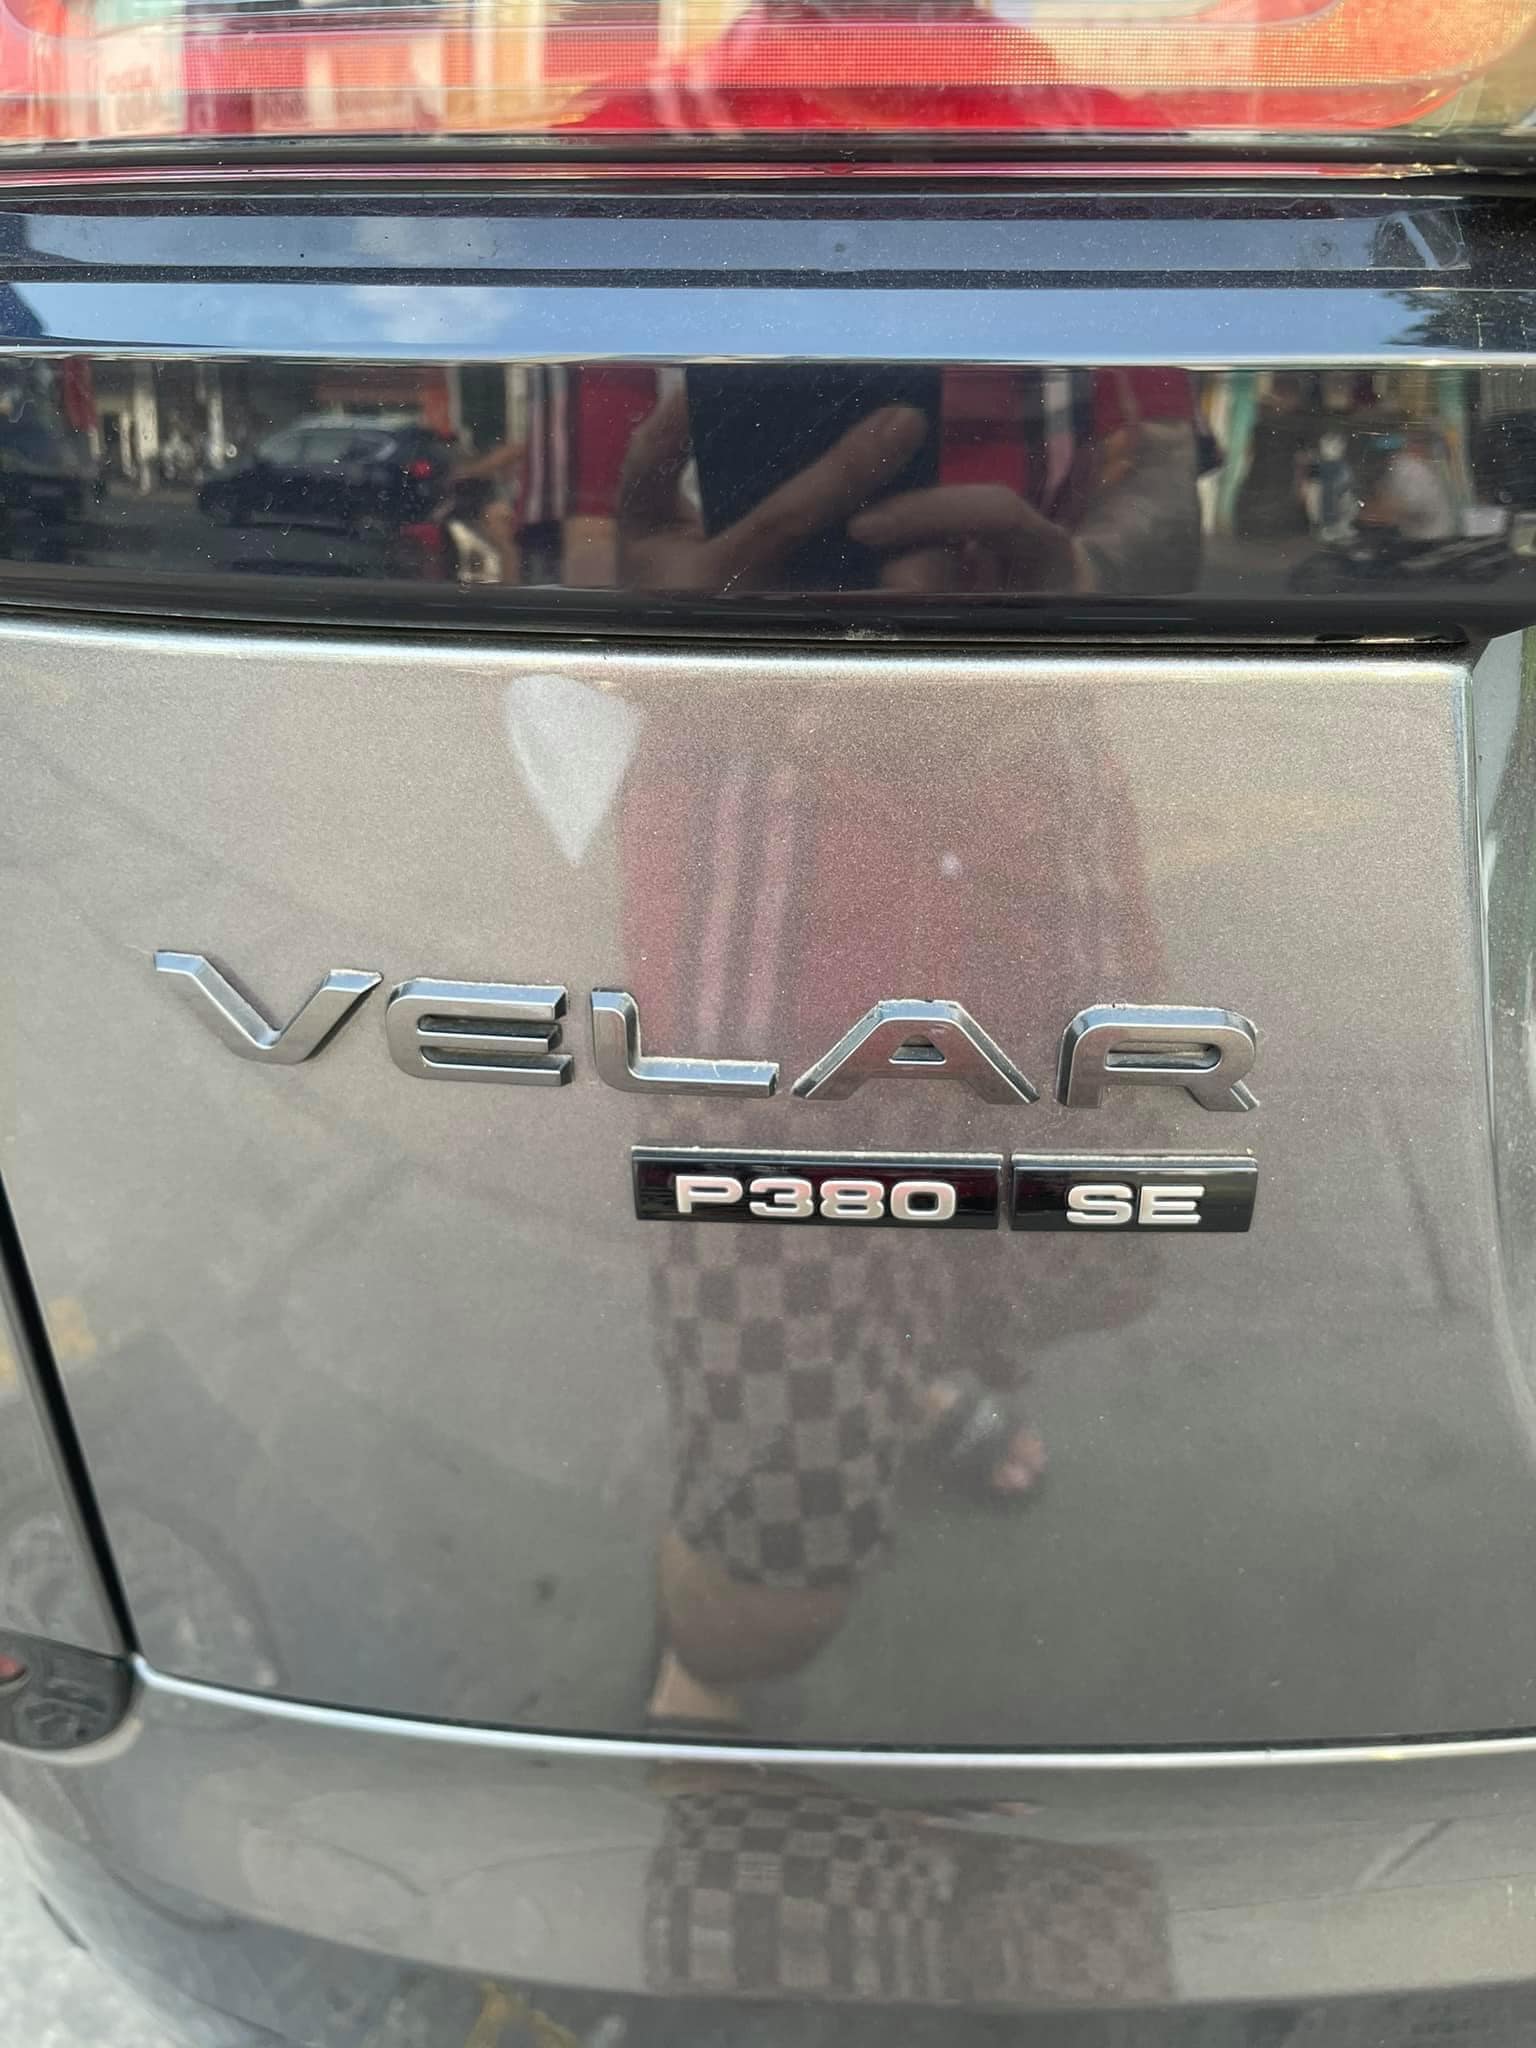 Bán xe vì sắp phá sản, chủ nhân Range Rover Velar chấp nhận lỗ 3 tỷ dù mới chạy 20.000km - Ảnh 3.